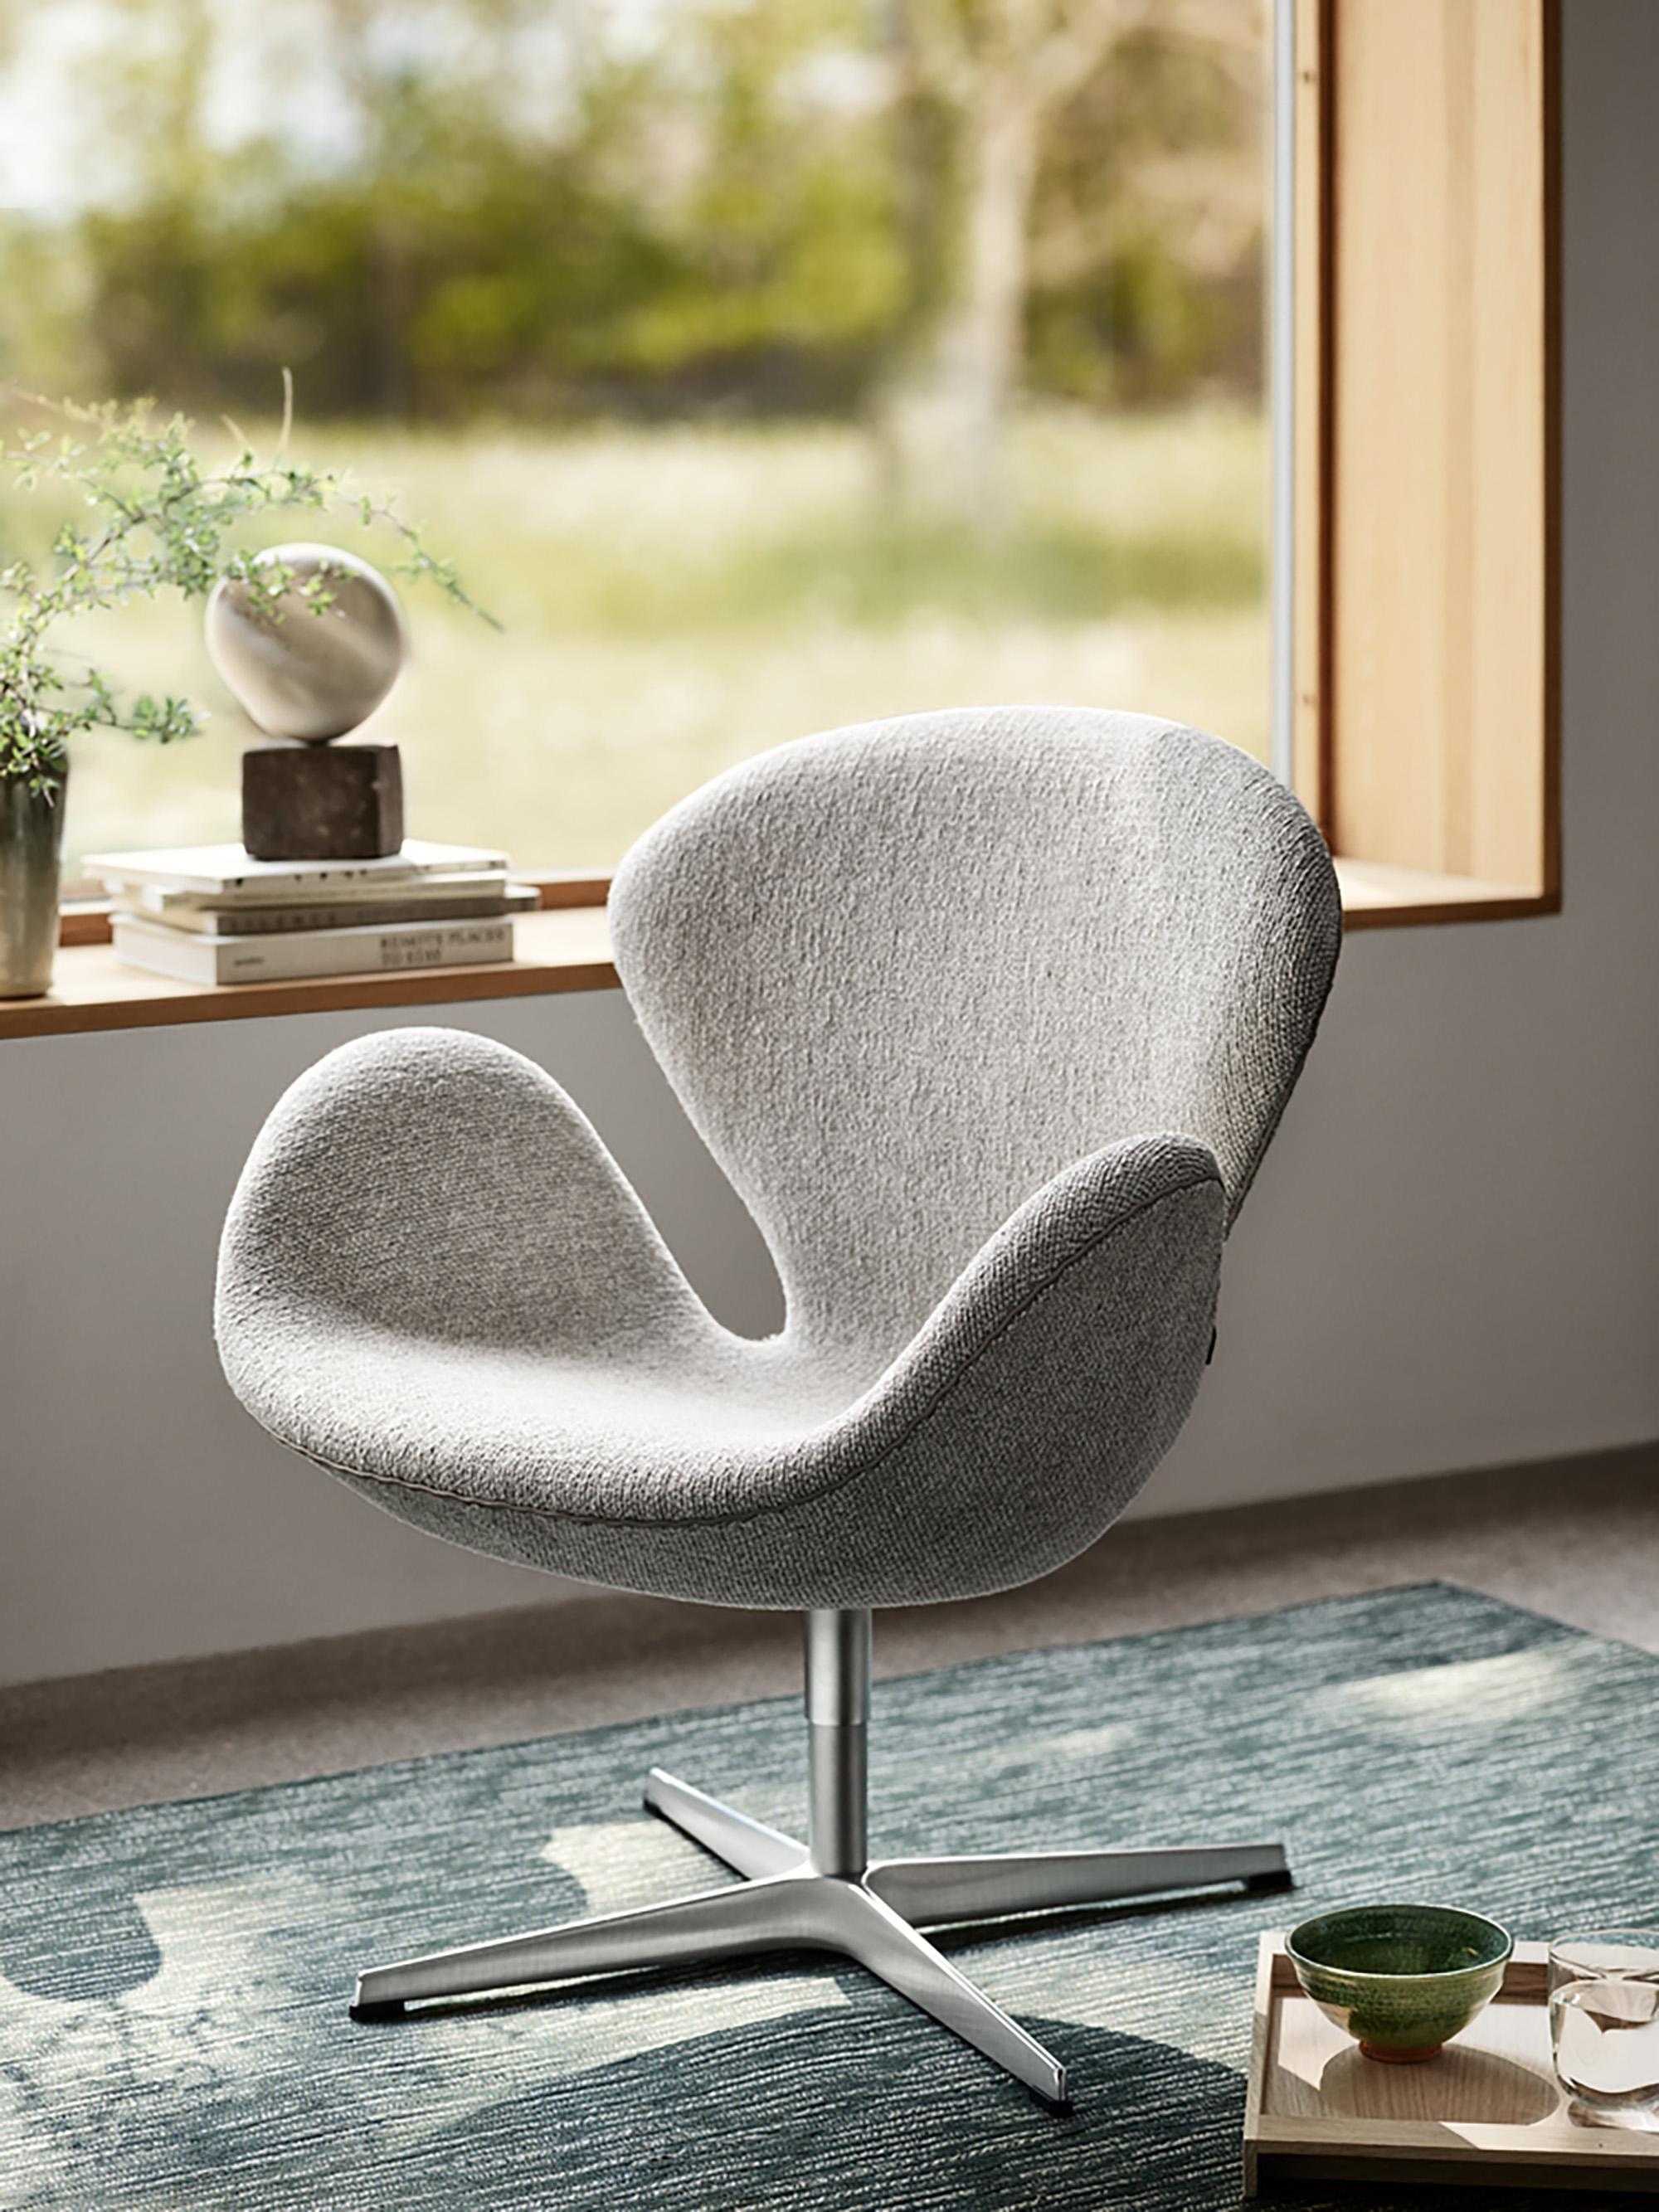 Arne Jacobsen 'Schwan'-Stuhl für Fritz Hansen in Stoffpolsterung (Kat. 1).

Fritz Hansen wurde 1872 gegründet und ist zum Synonym für legendäres dänisches Design geworden. Die Marke kombiniert zeitlose Handwerkskunst mit einem Schwerpunkt auf